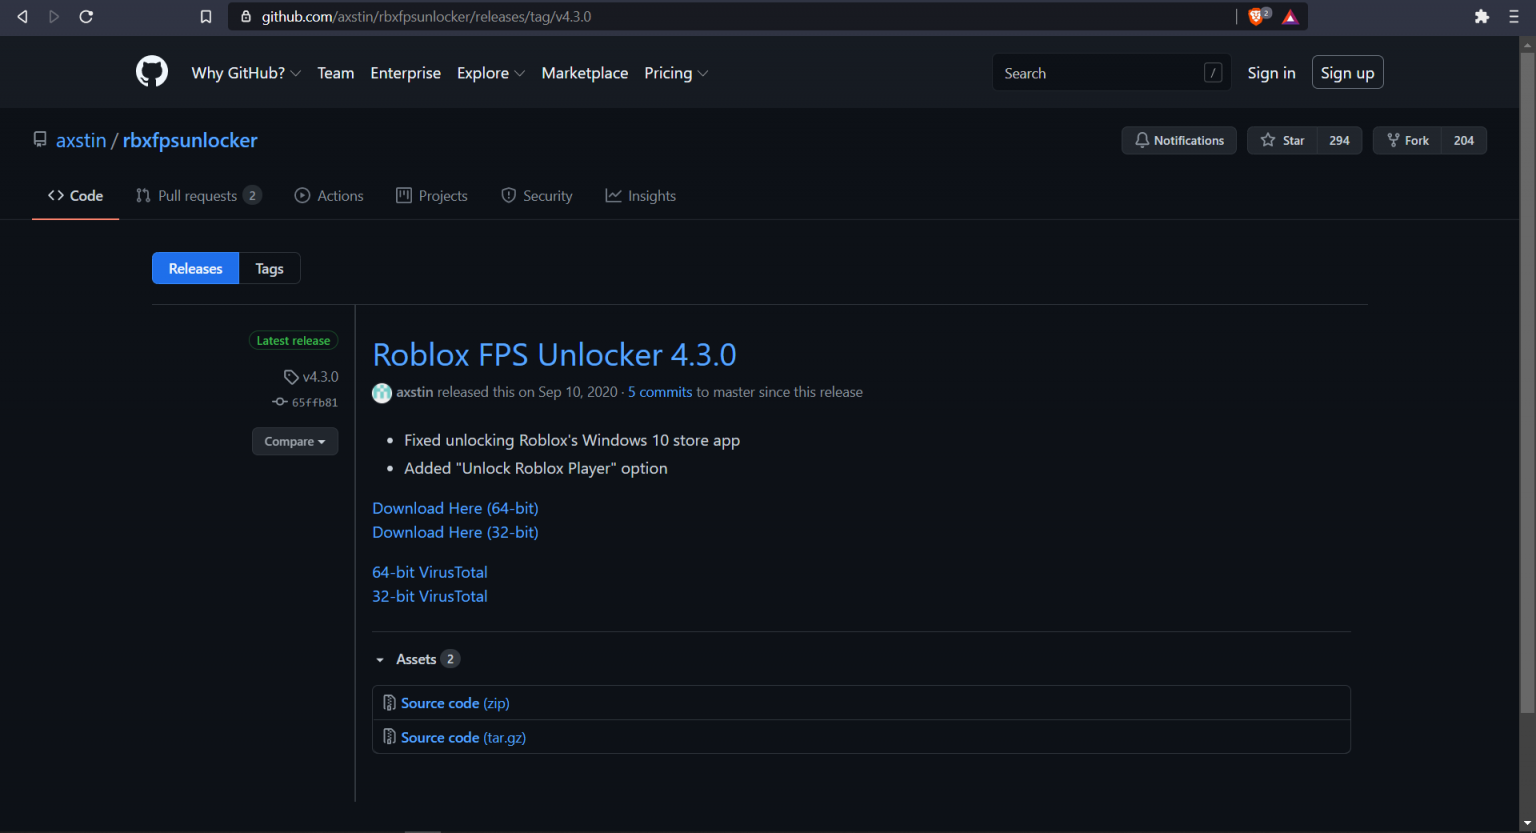 fps unlocker for mobile roblox